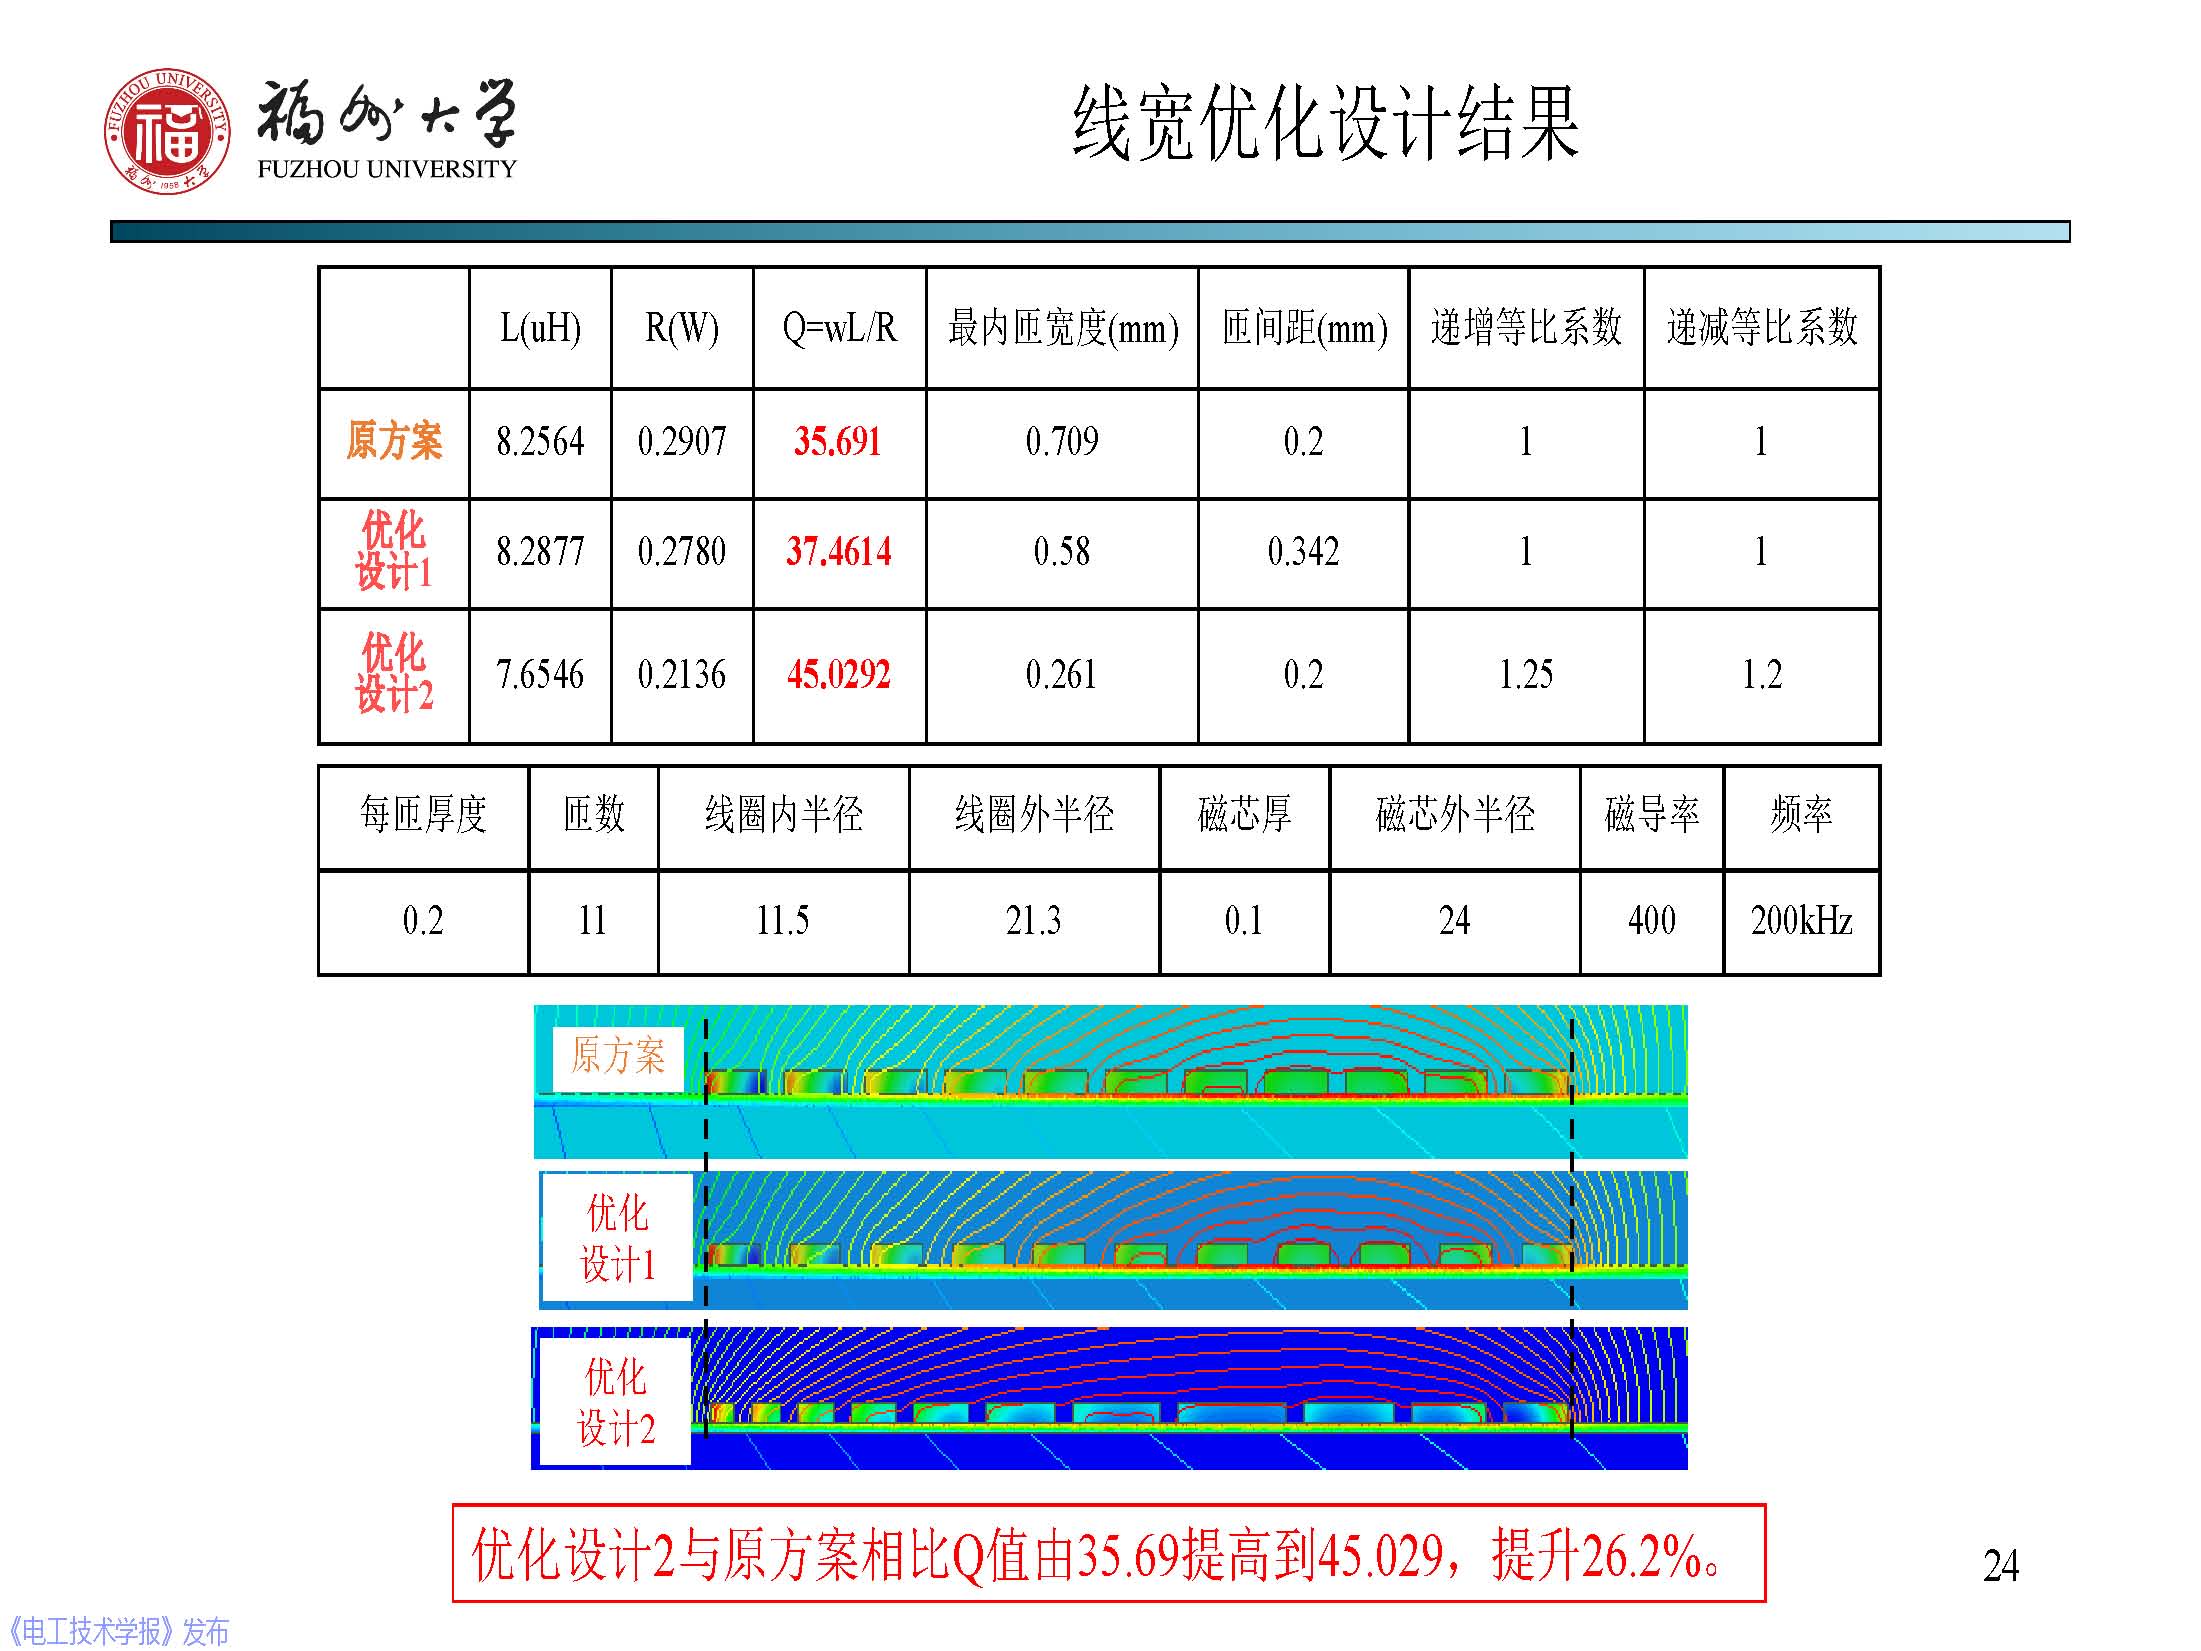 福州大学 陈庆彬 副教授：无线电能传输磁耦合系统的分析与设计